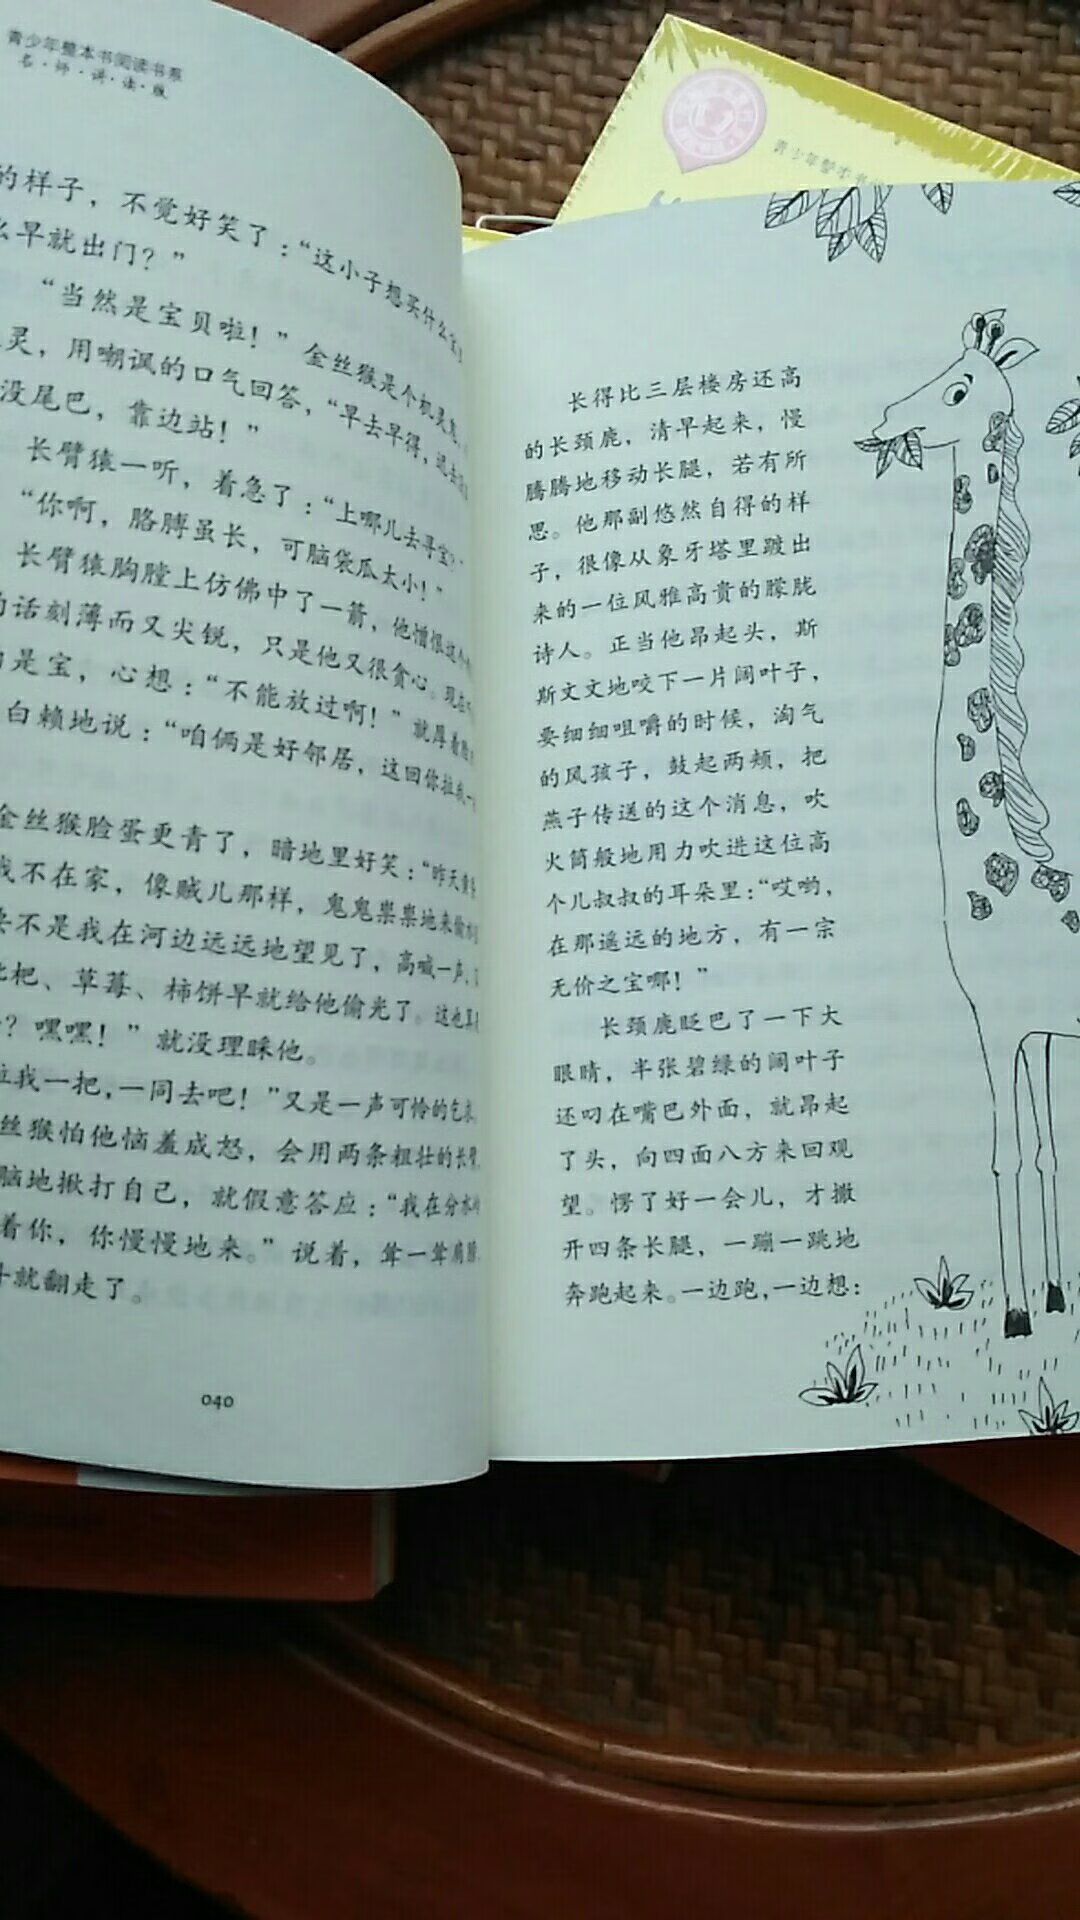 字比较大，插图挺好看的，只打开了一本来读，故事还可以，孩子还小，我买来给他讲故事的，从小听得都是外国童话，该多读读中国童话故事了，这次搞活动买得，很便宜。